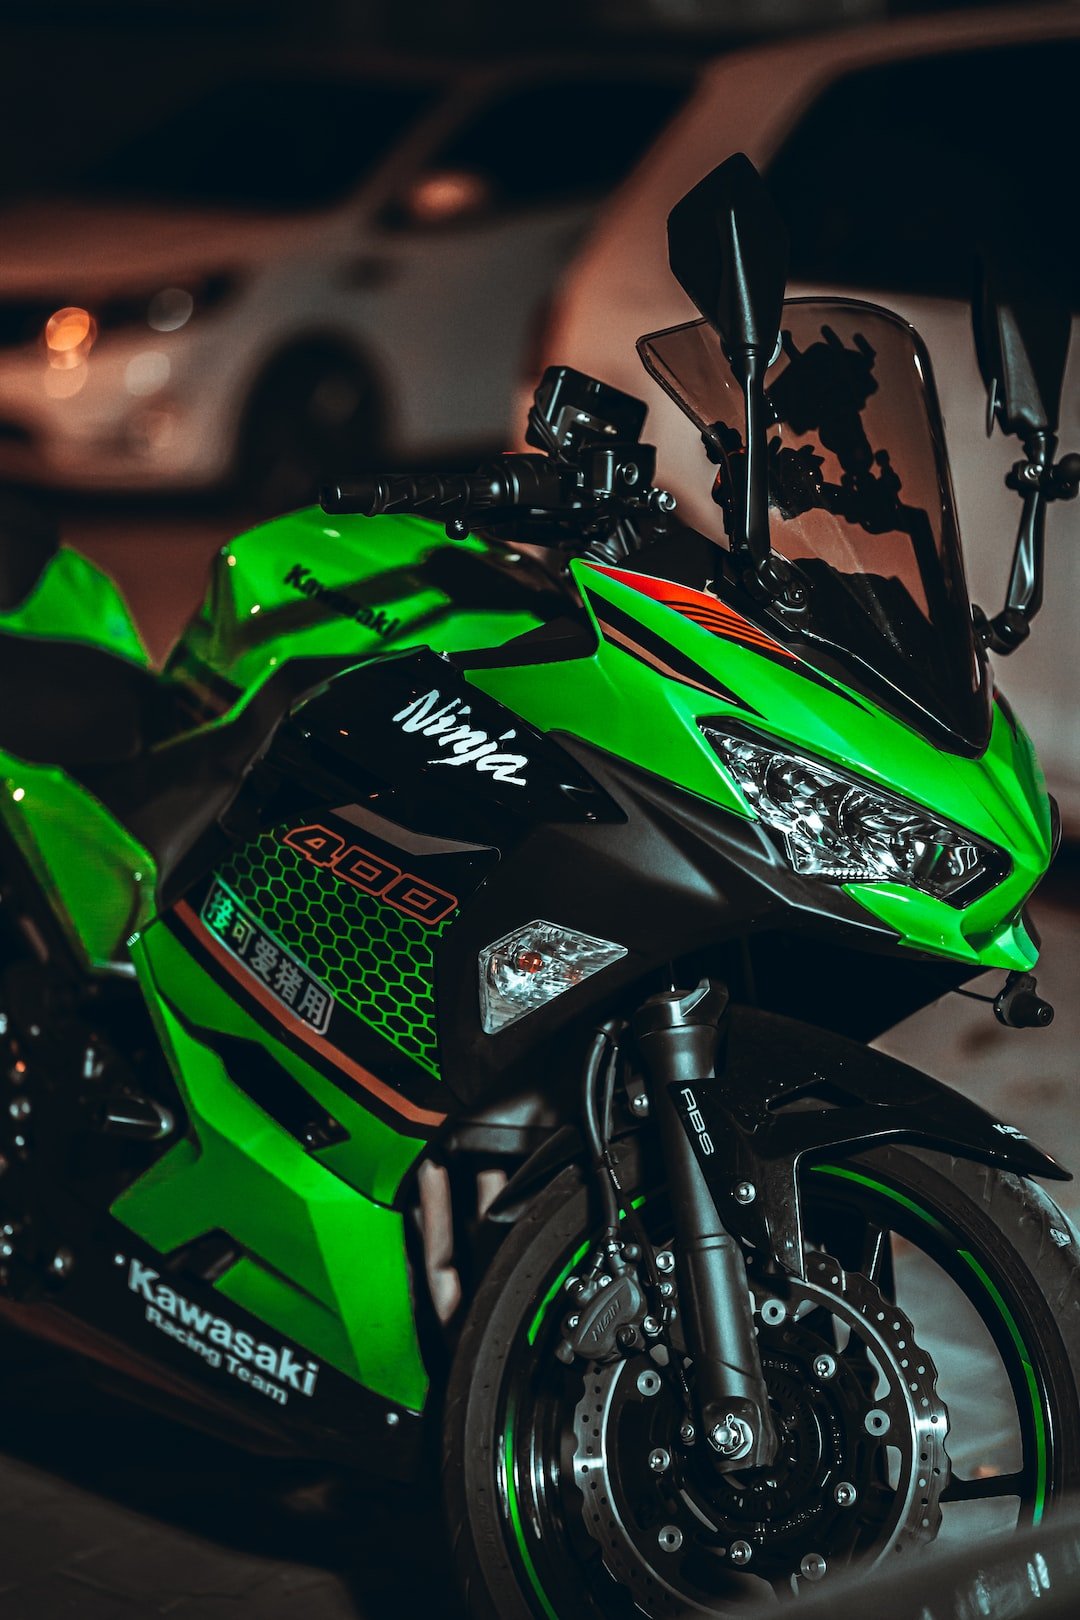 green and black honda motorcycle